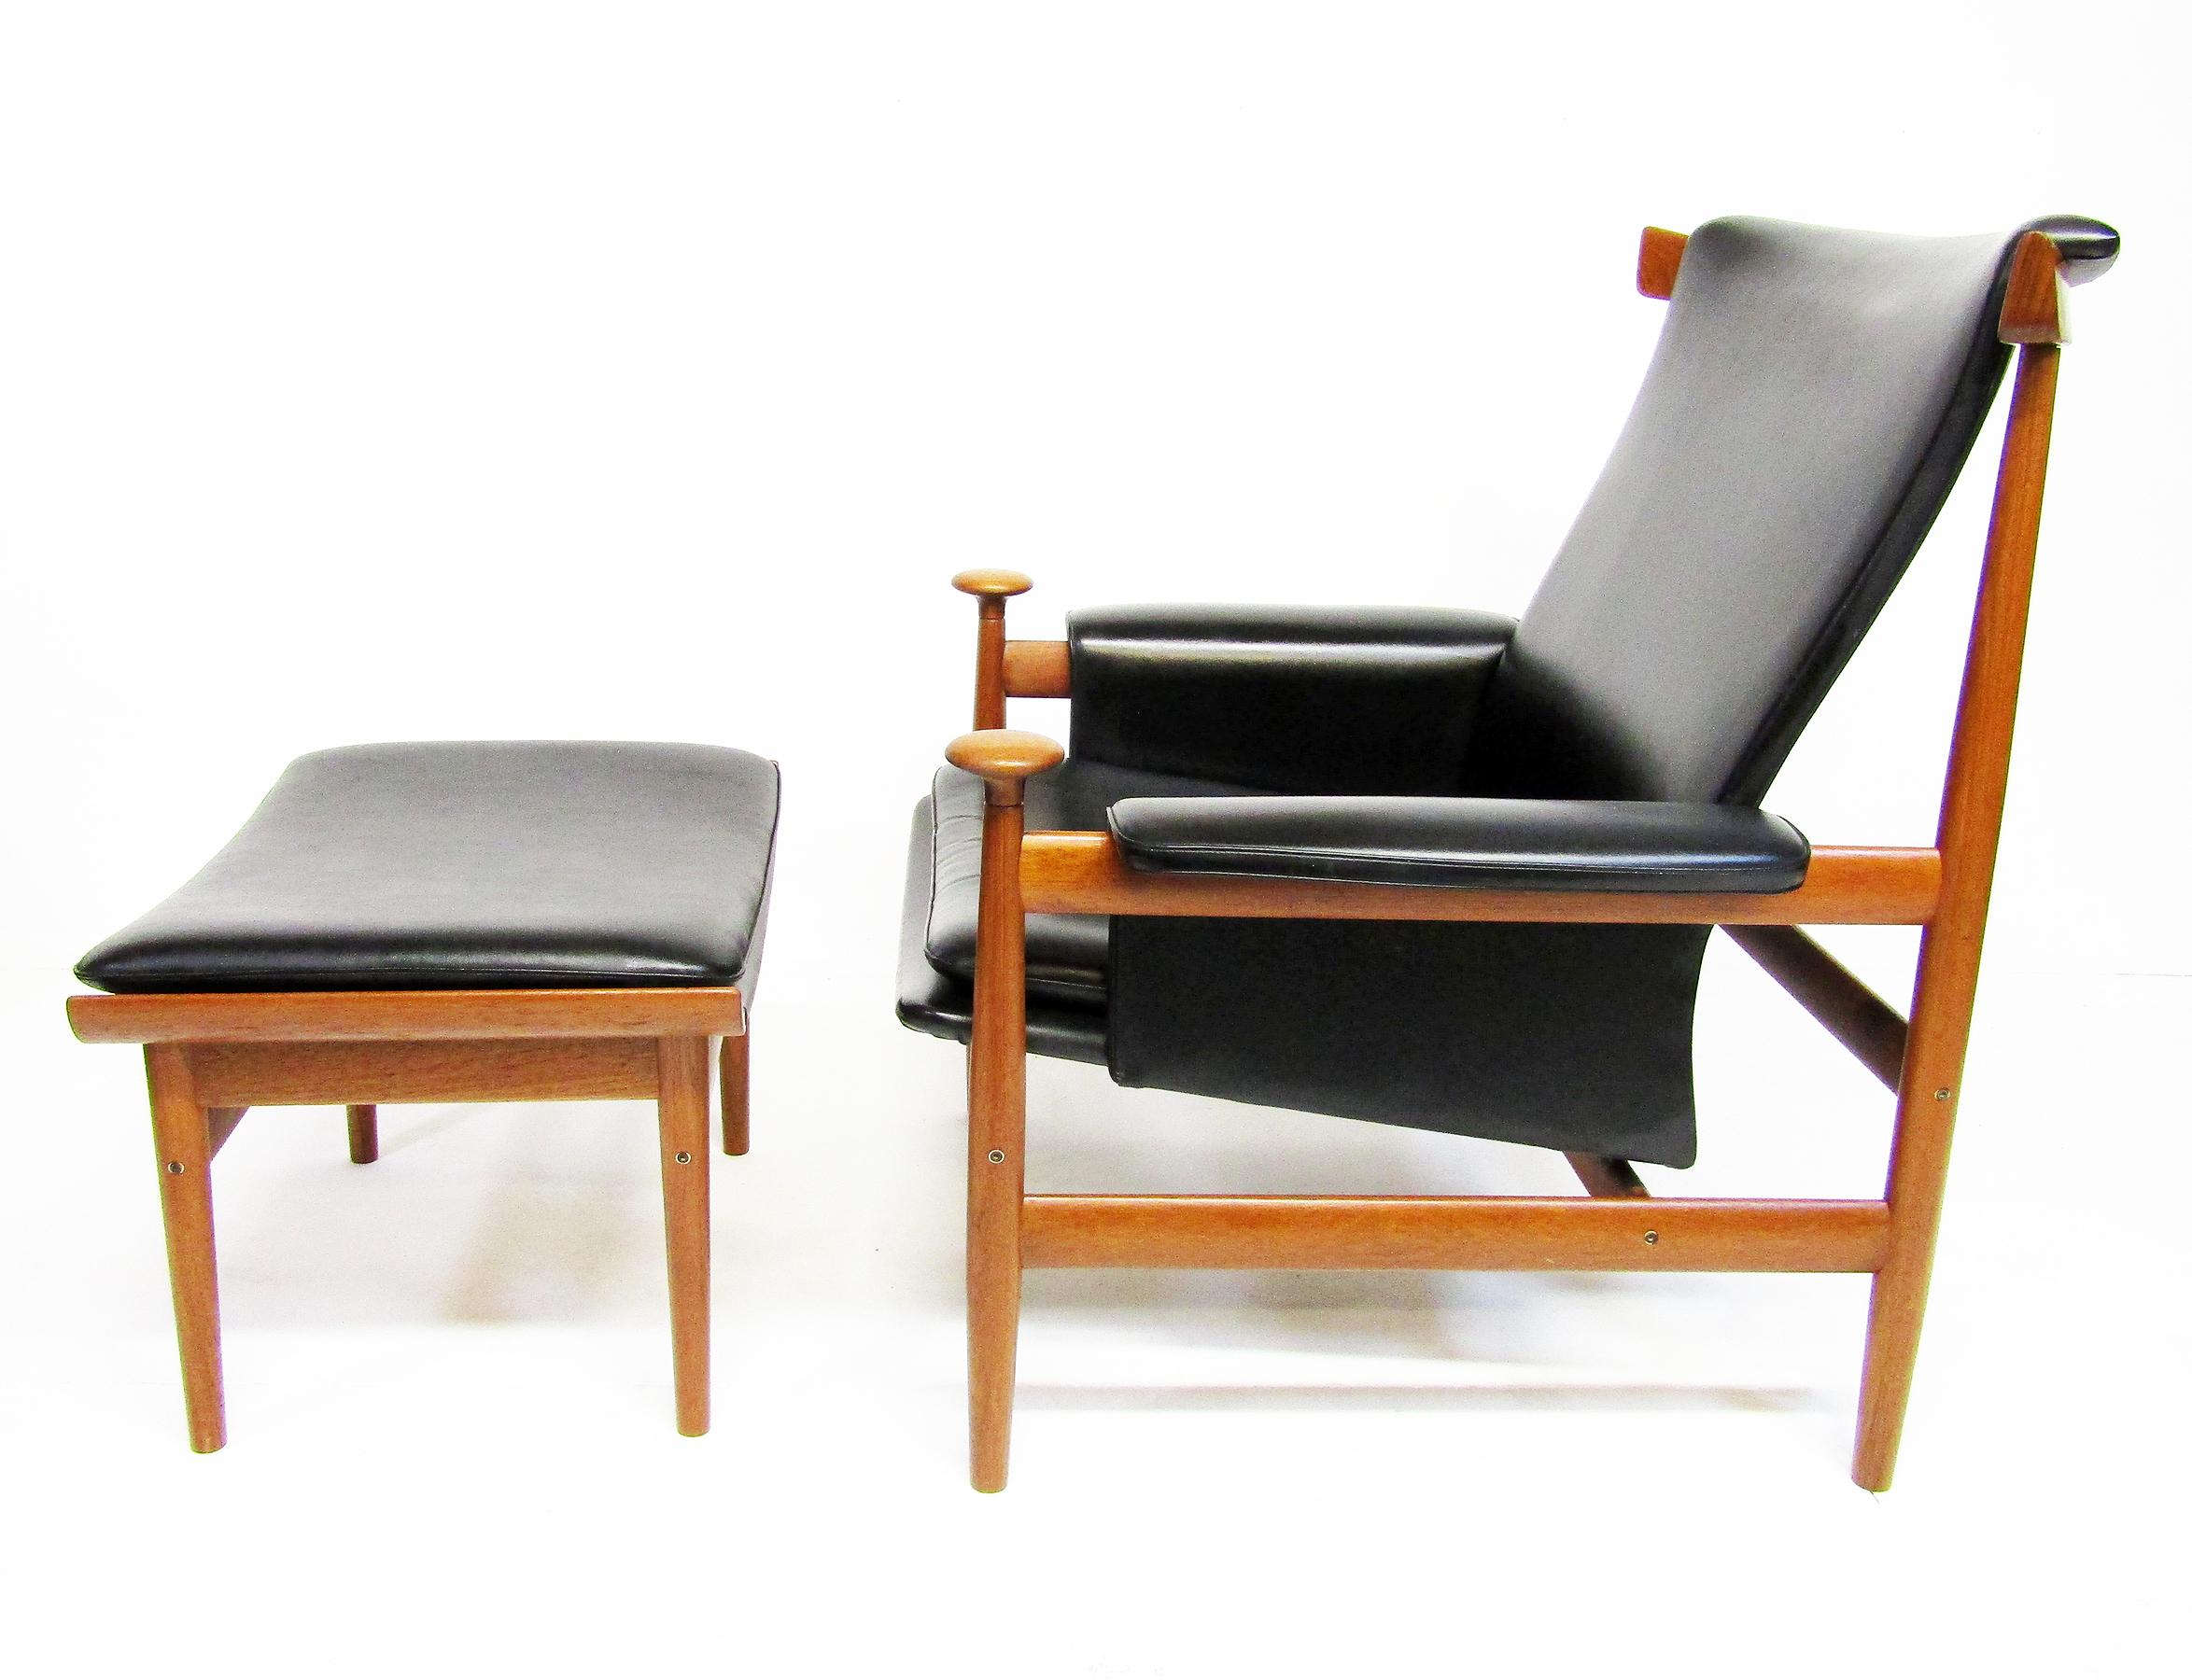 1960s Danish Bwana Chair & Ottoman By Finn Juhl In Teak & Skai For Sale 11